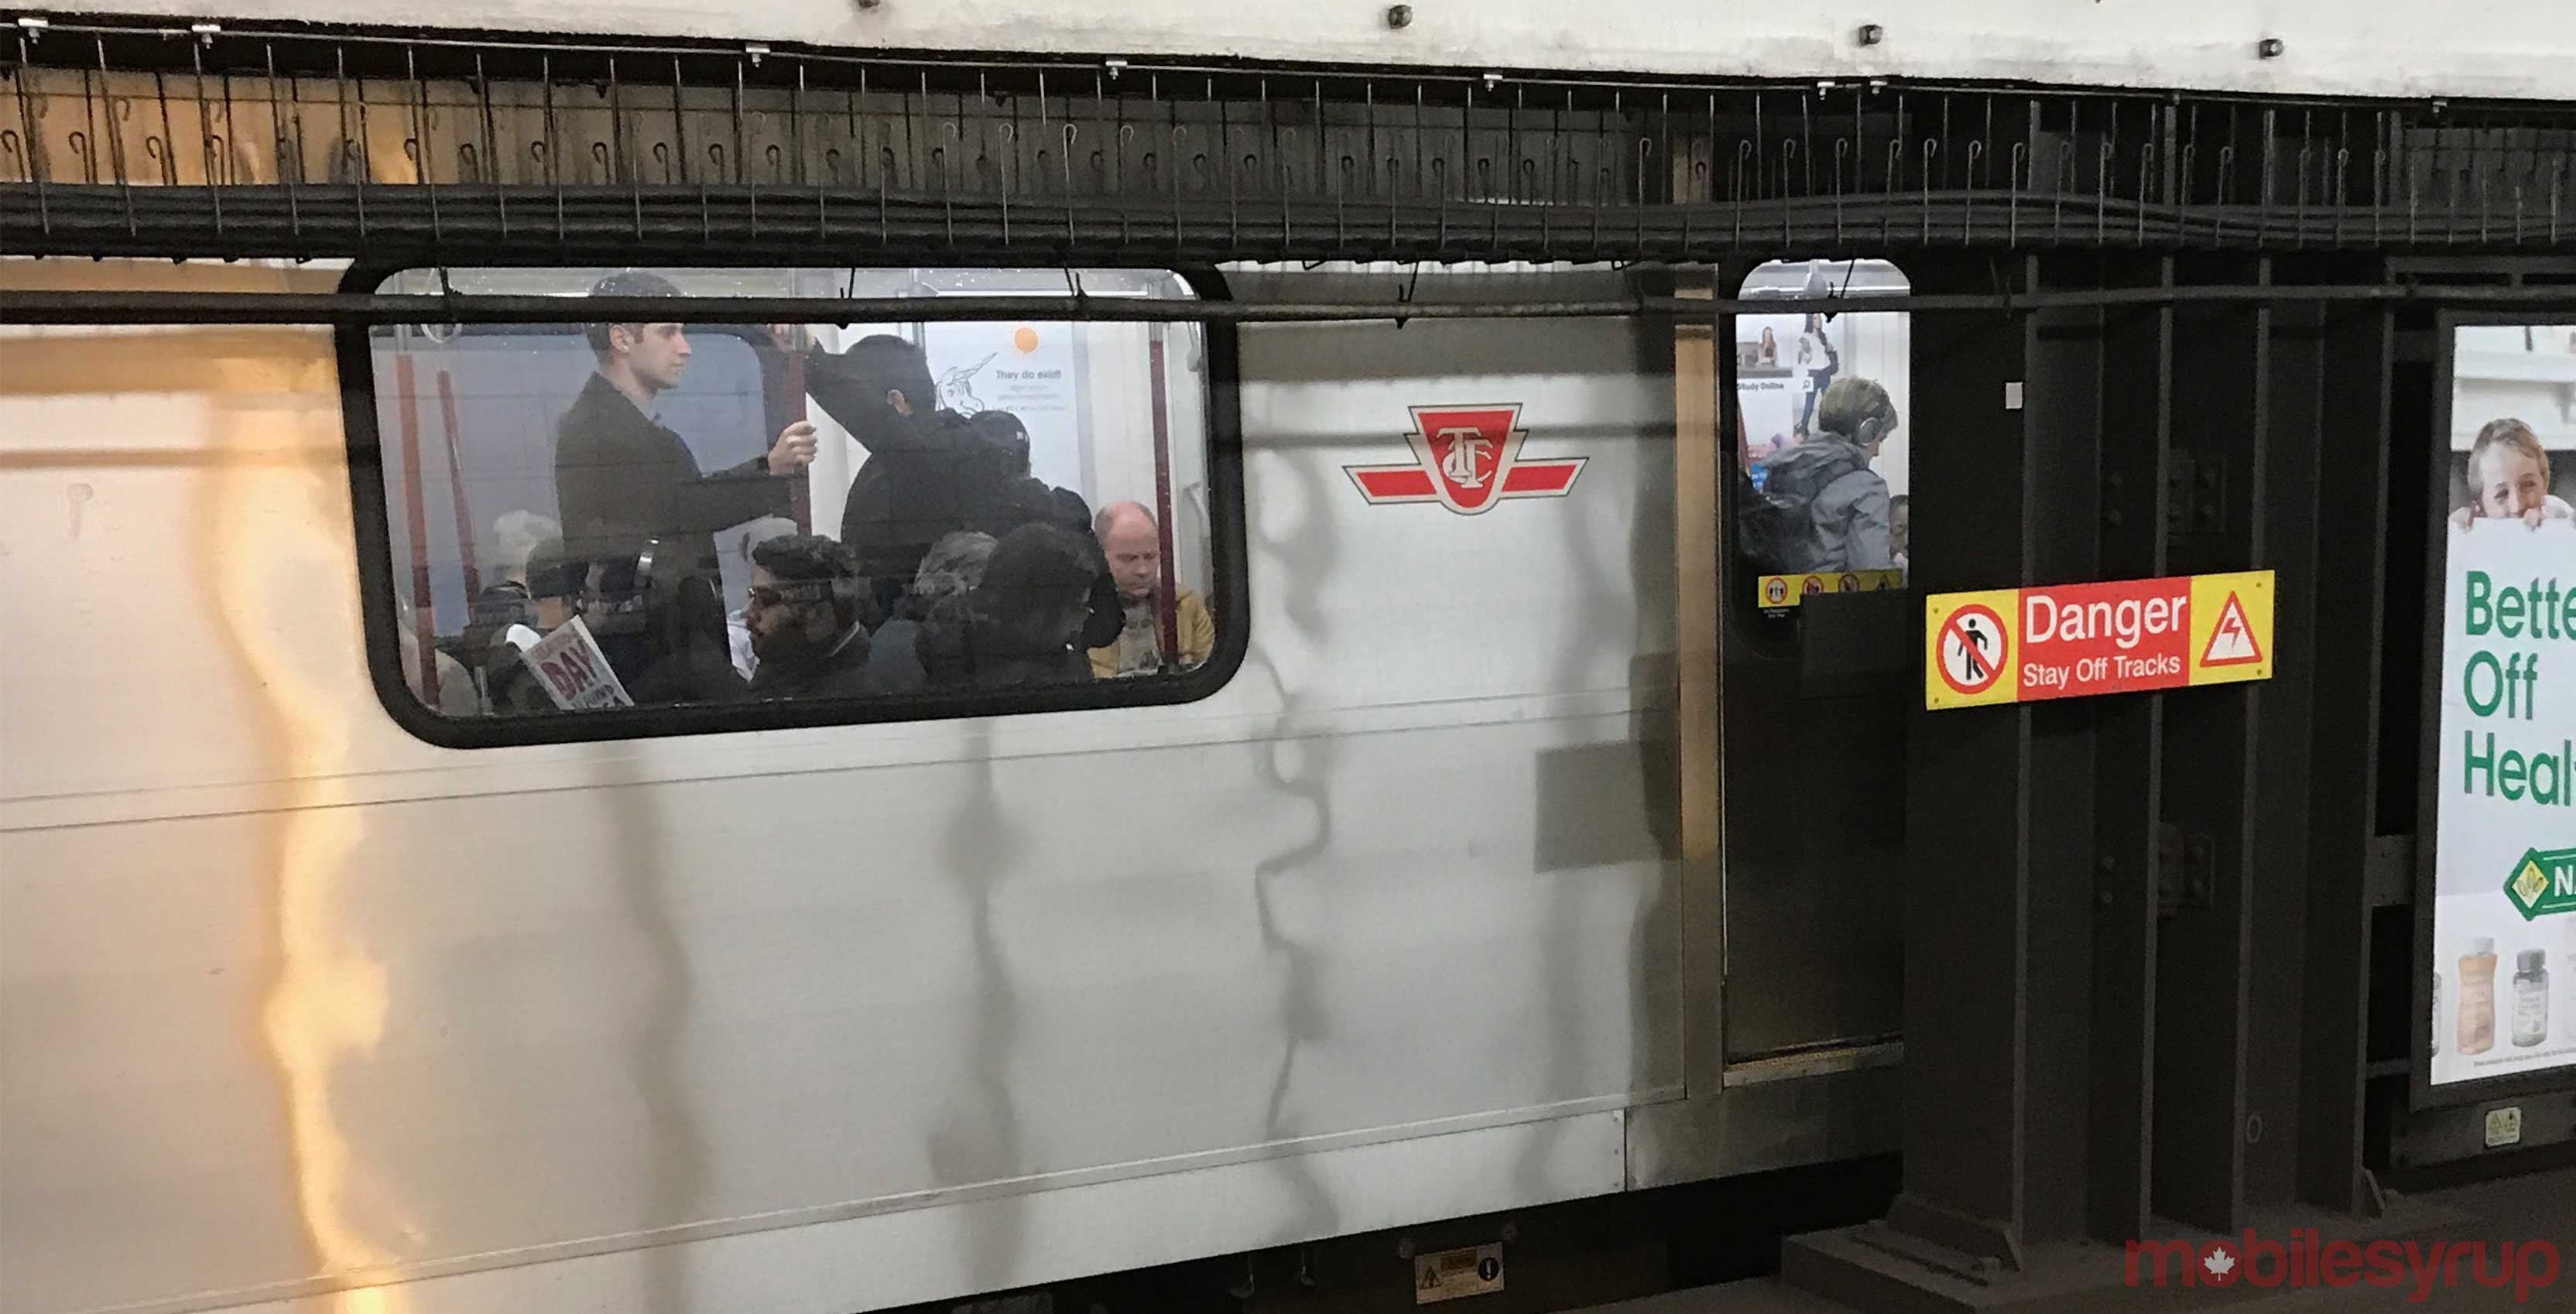 TTC subway car